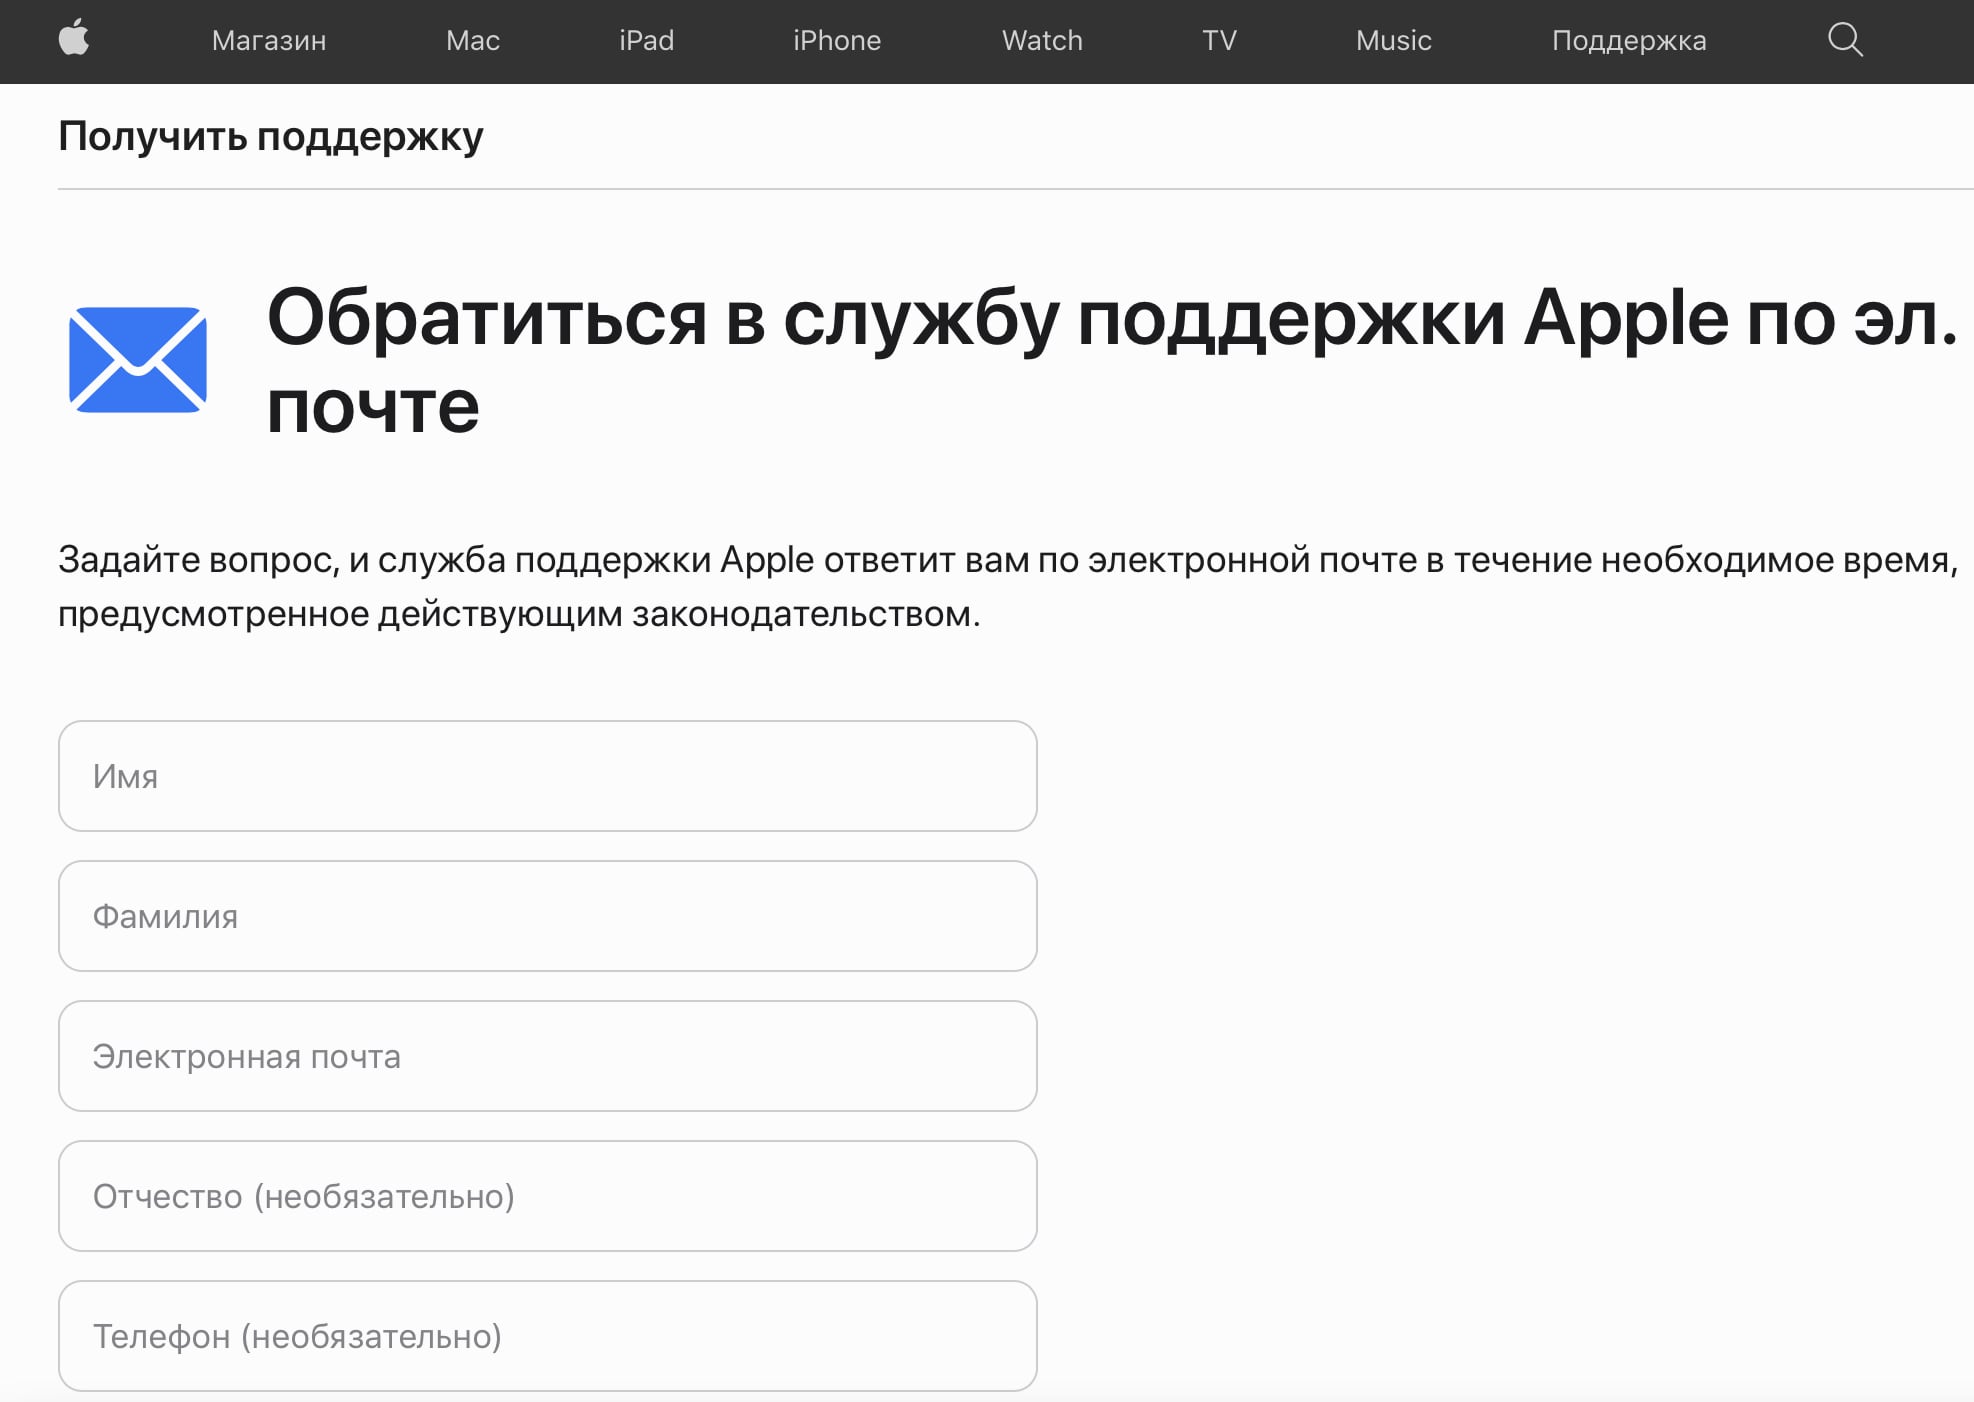 Apple разместила на своем российском сайте форму для обращений. Можно задать любые вопросы